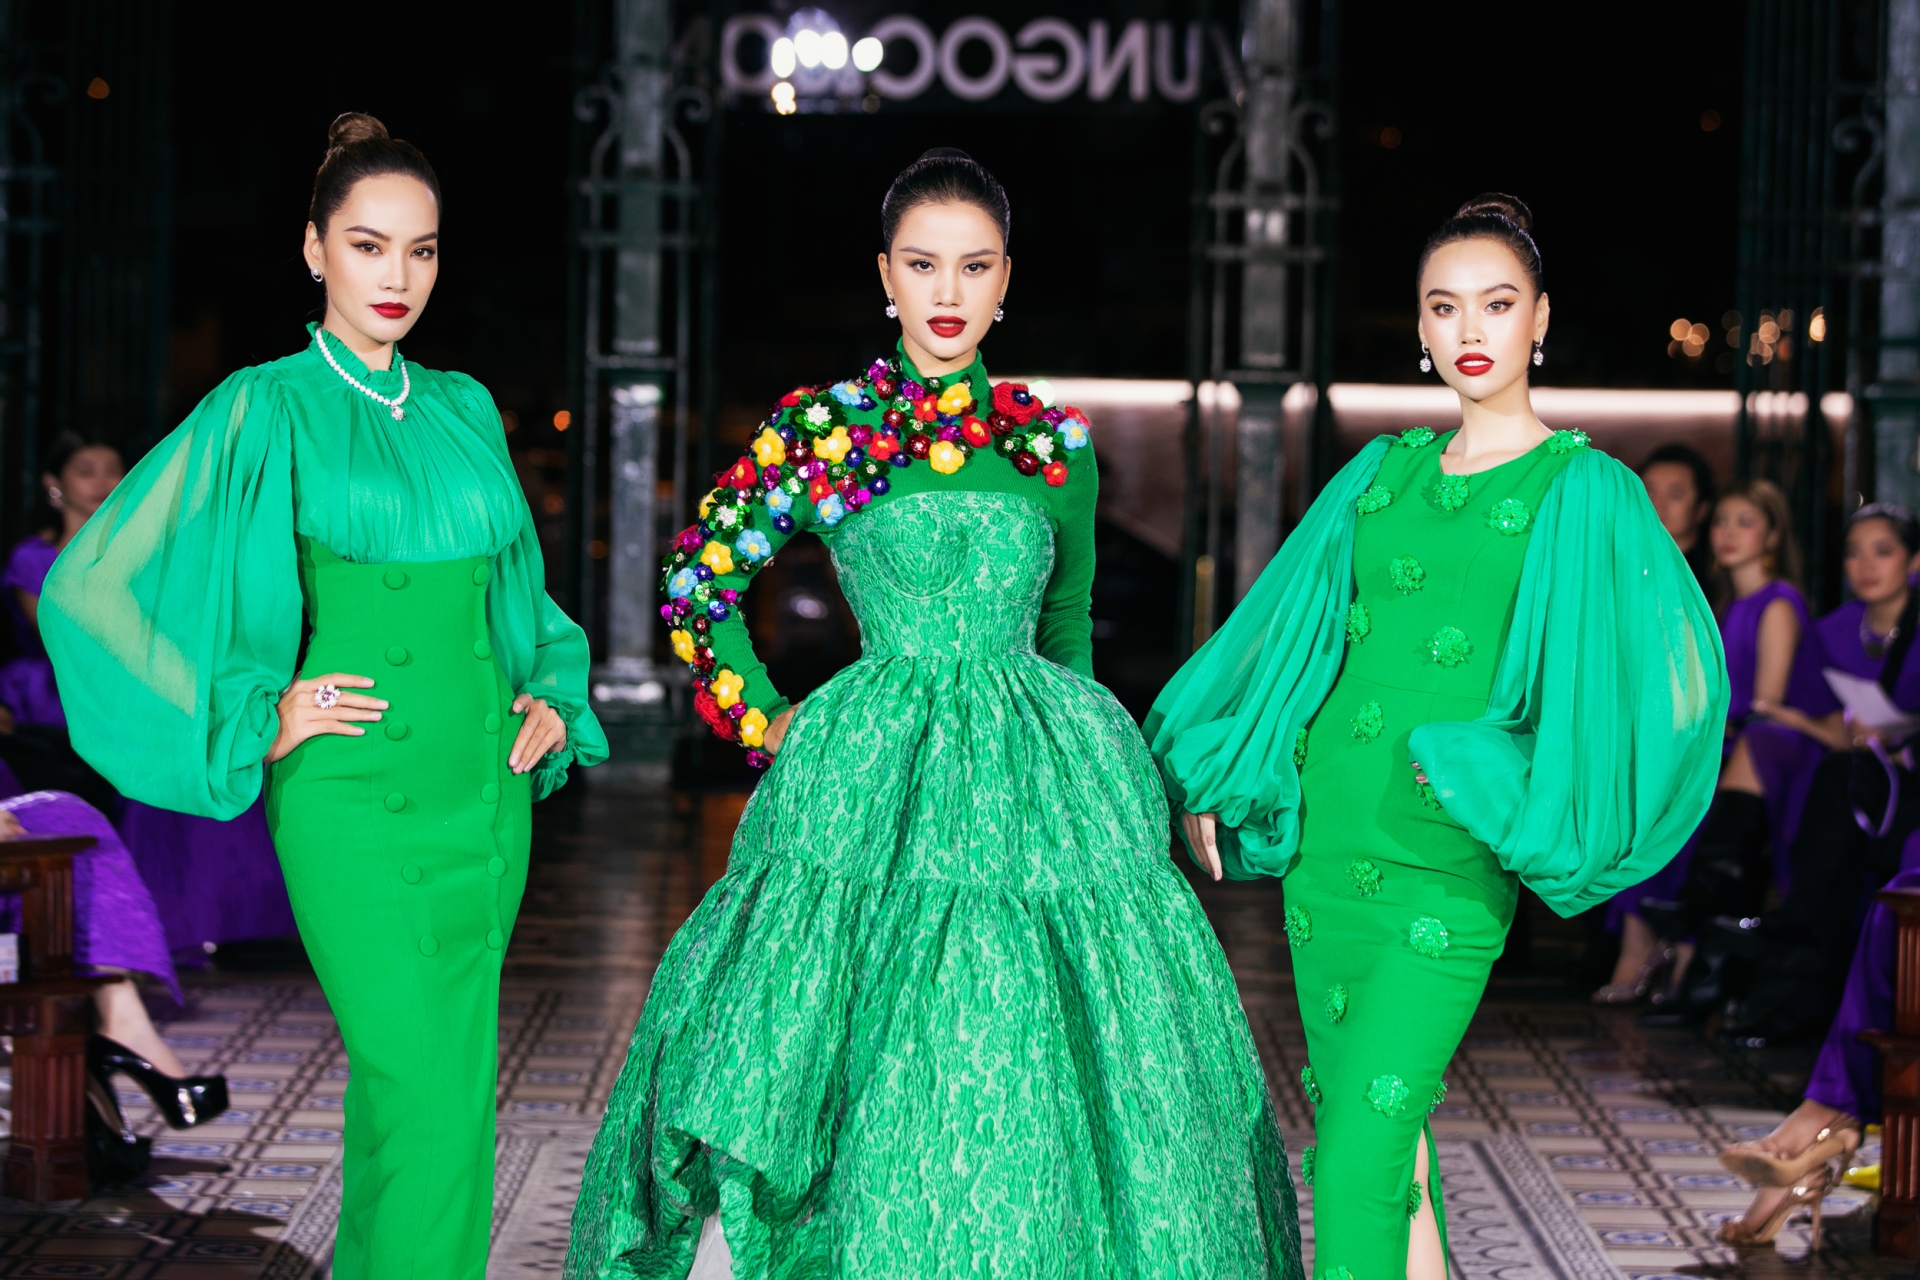 Đỗ Hà, Mai Phương, Lương Thuỳ Linh diễn thời trang trong show của Vũ Ngọc&Son - 6